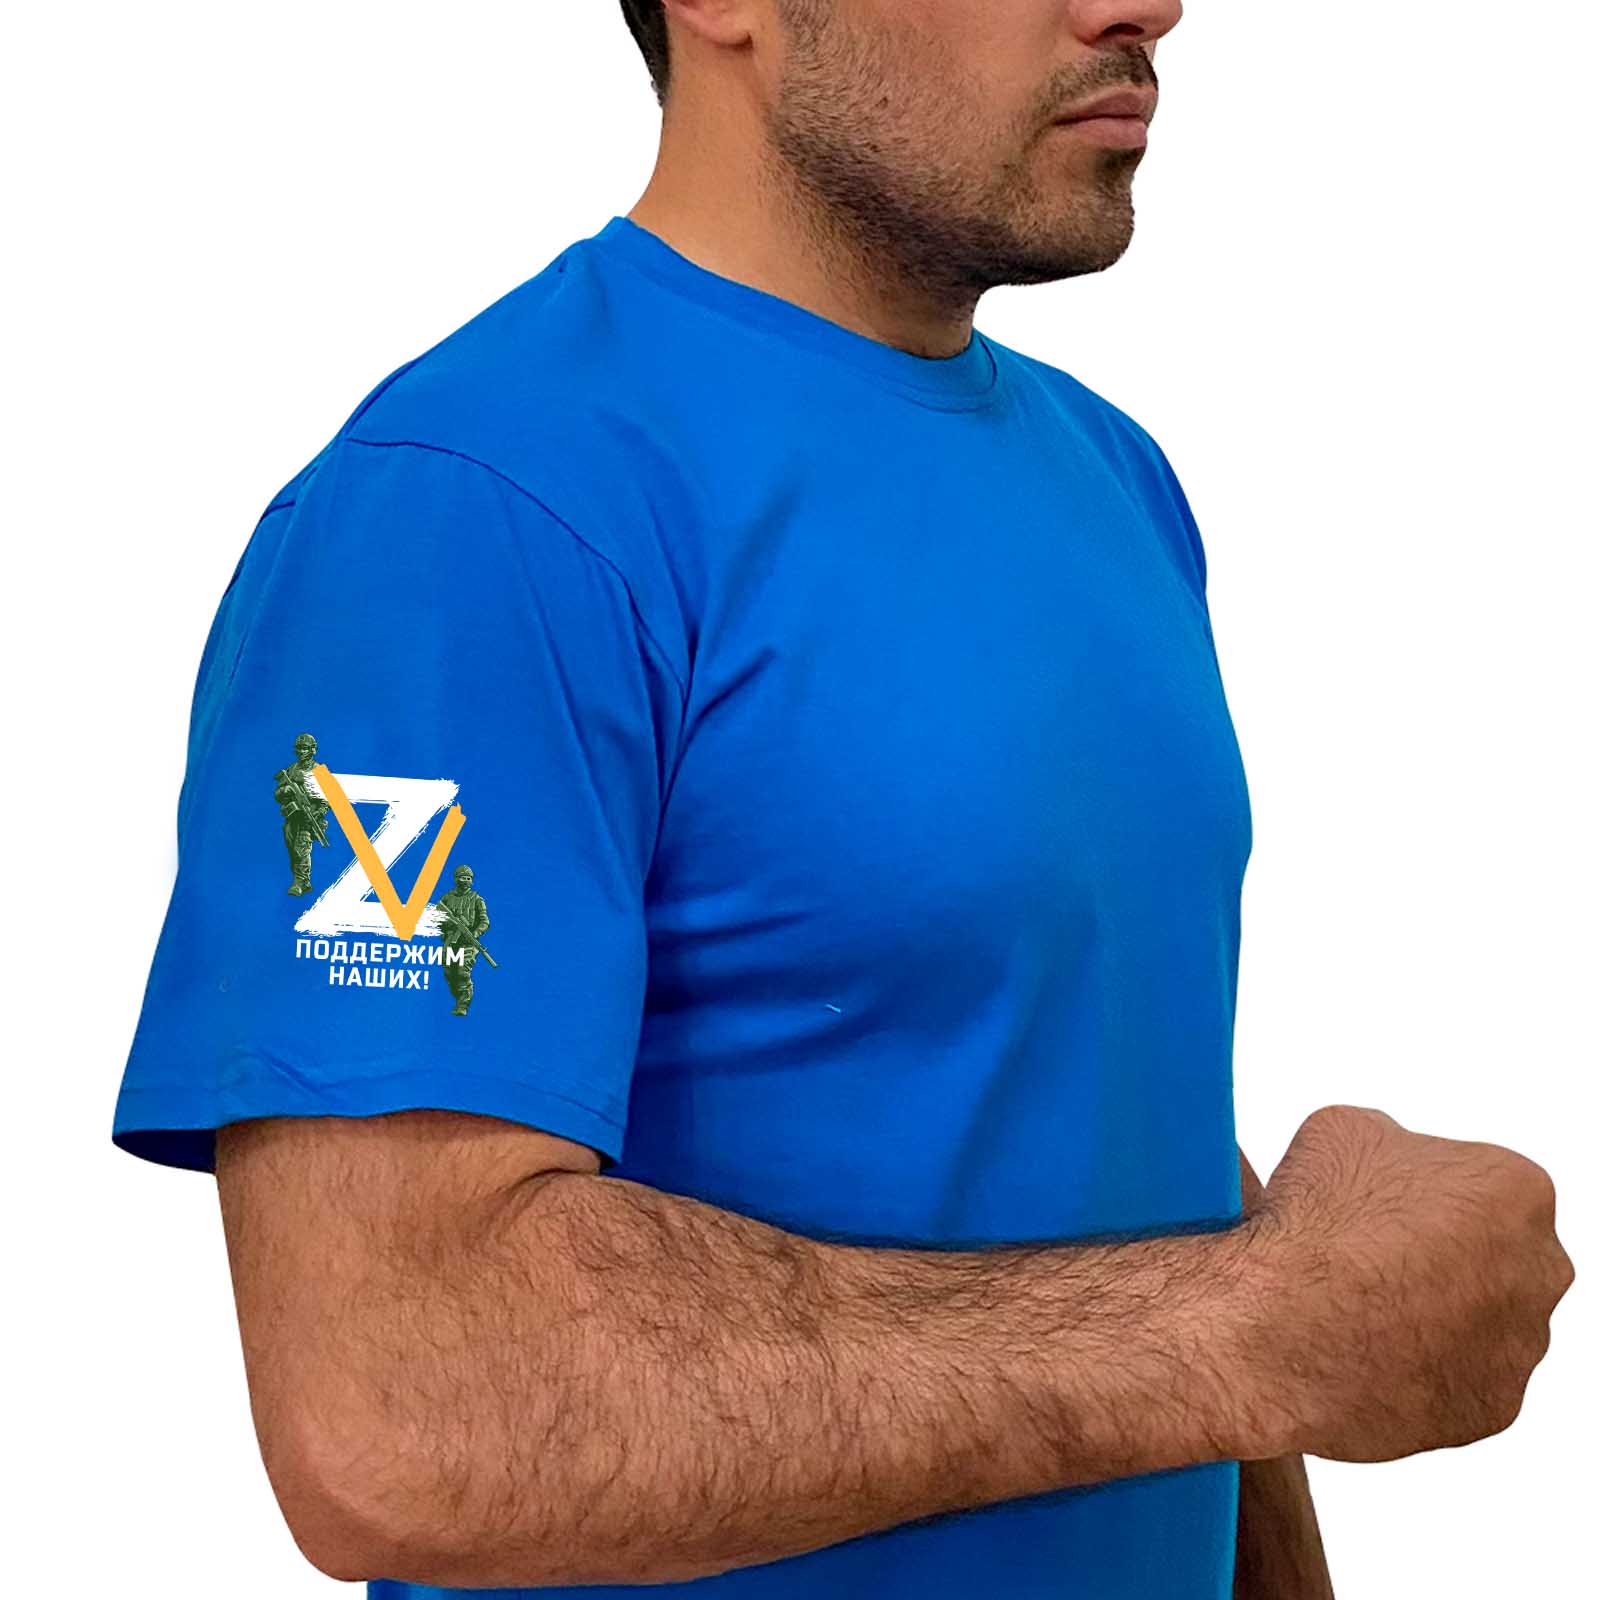 Купить строгую голубую футболку Z V с доставкой в ваш город